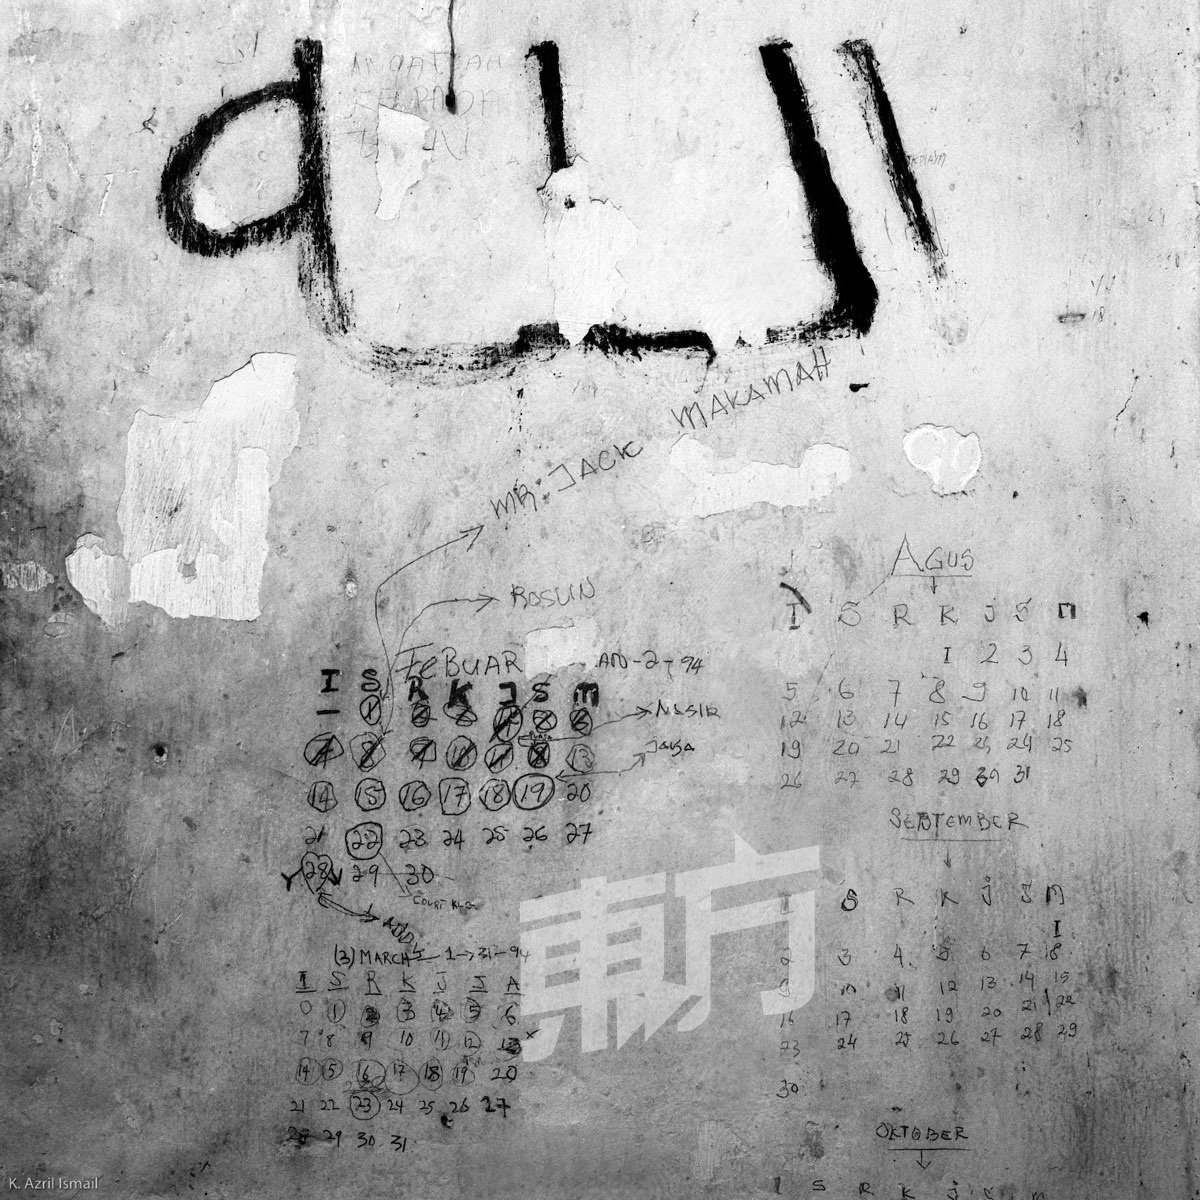 其中一幅涂鸦把日历画在墙上，从文字推测，应该是囚犯用于记录出庭的日子。有句话说，牢房里的生活， 是数著日子过的，阿兹里透过镜头， 把早已流逝的时光定格。